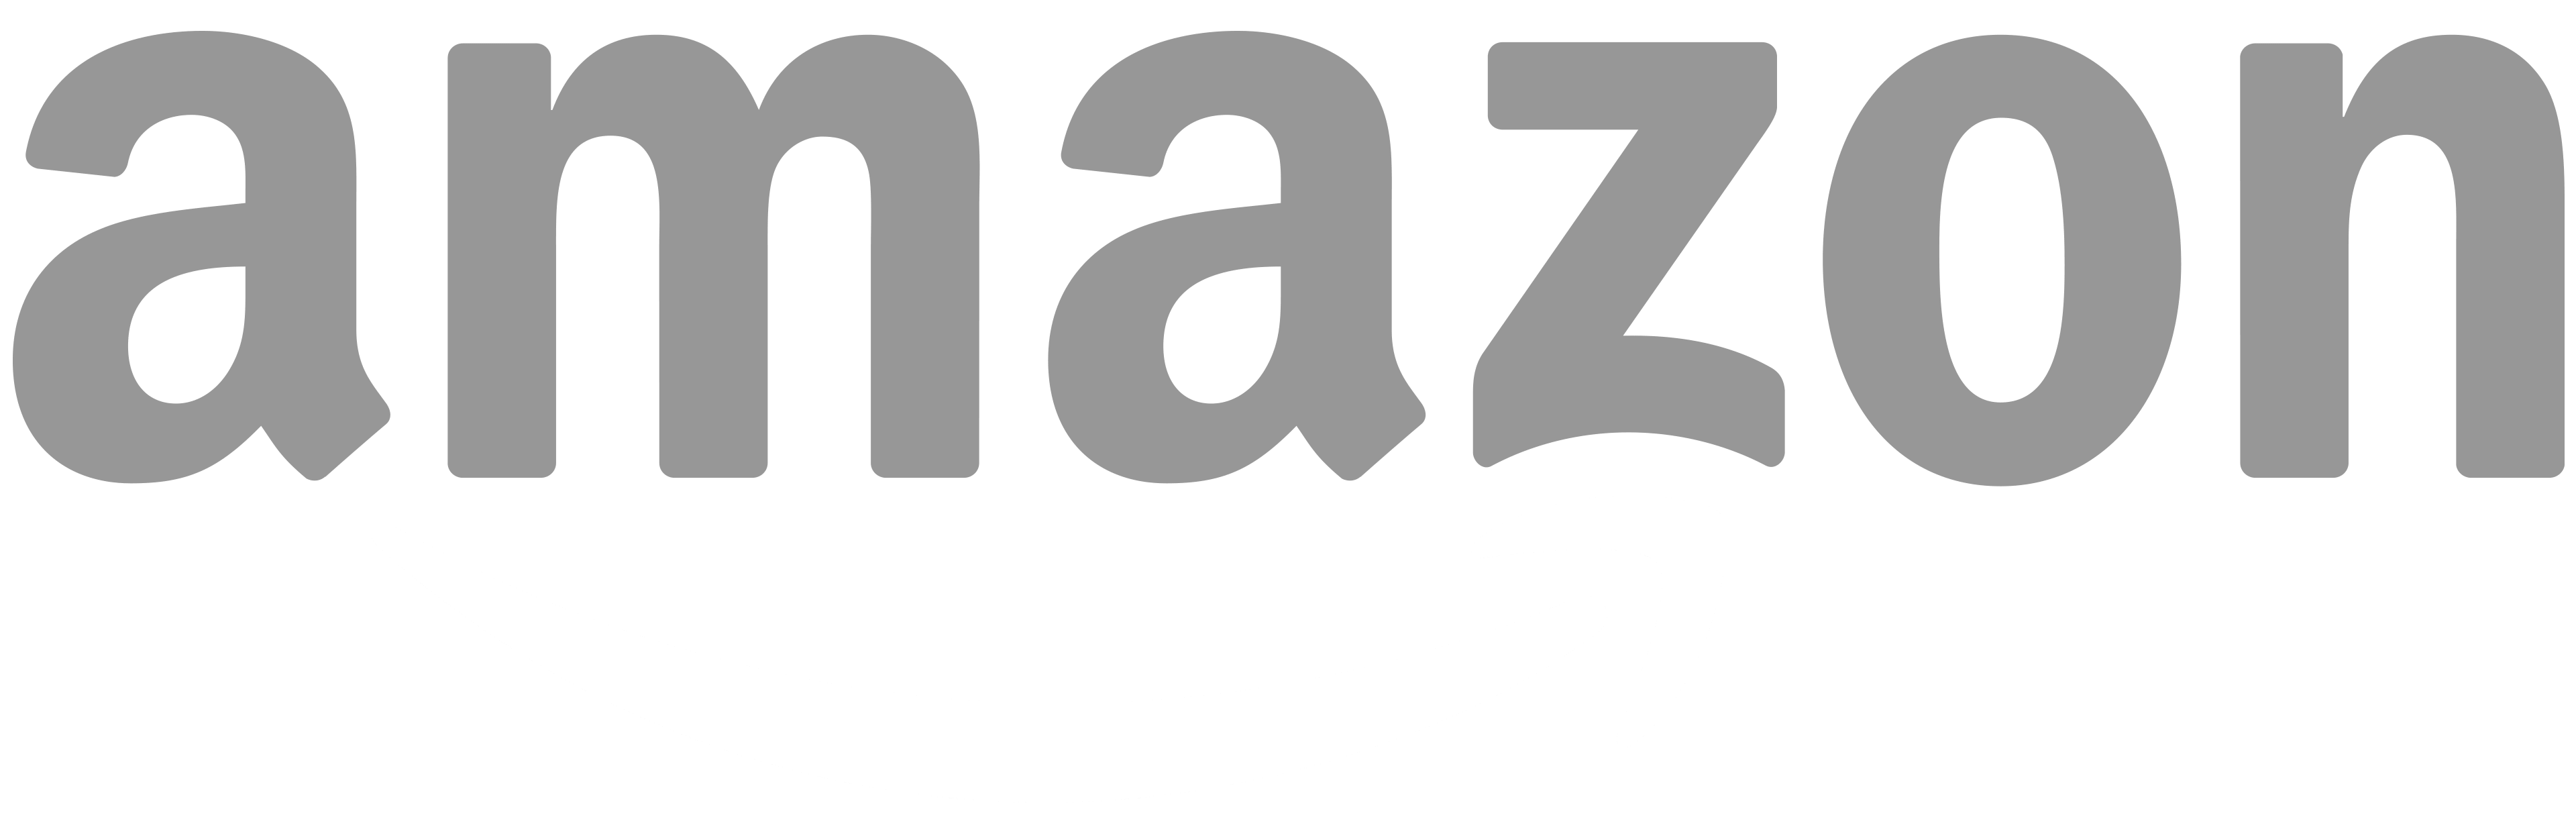 Logotipo: Amazon